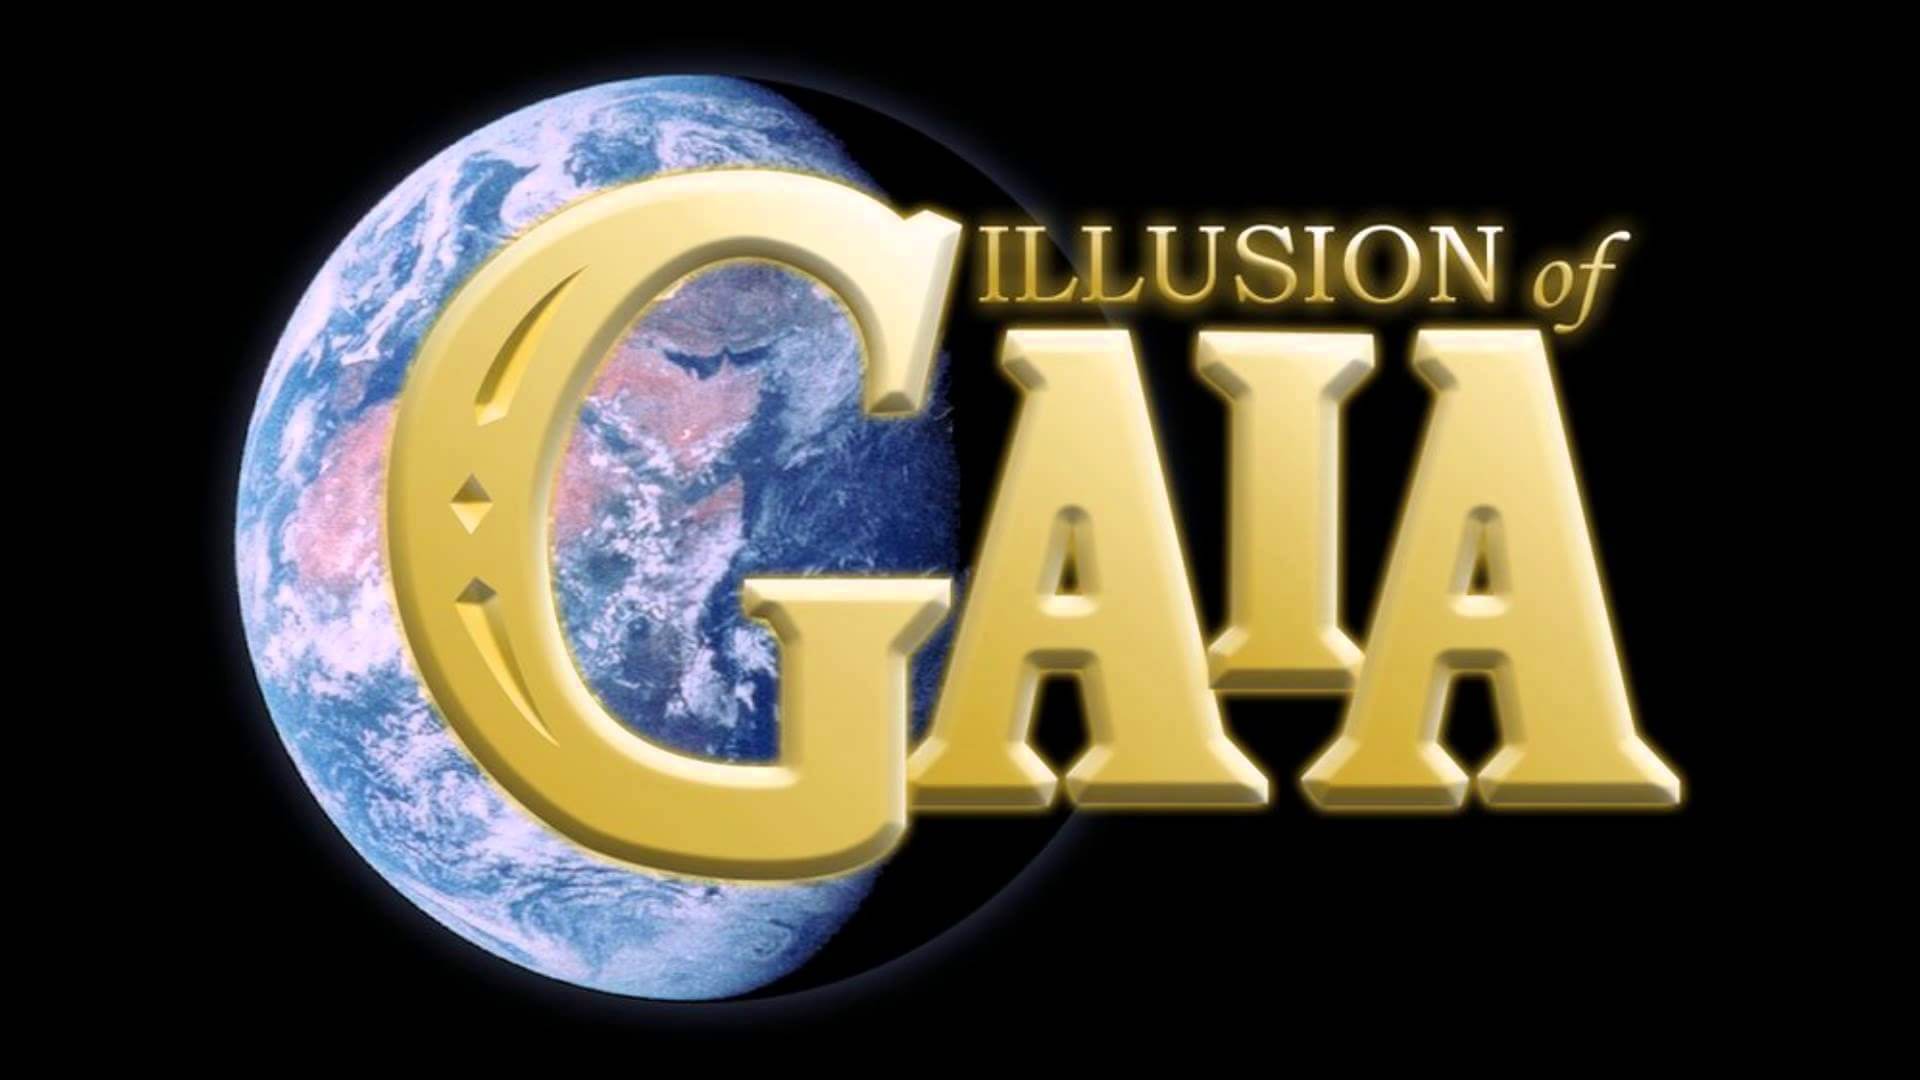 illusion of gaia